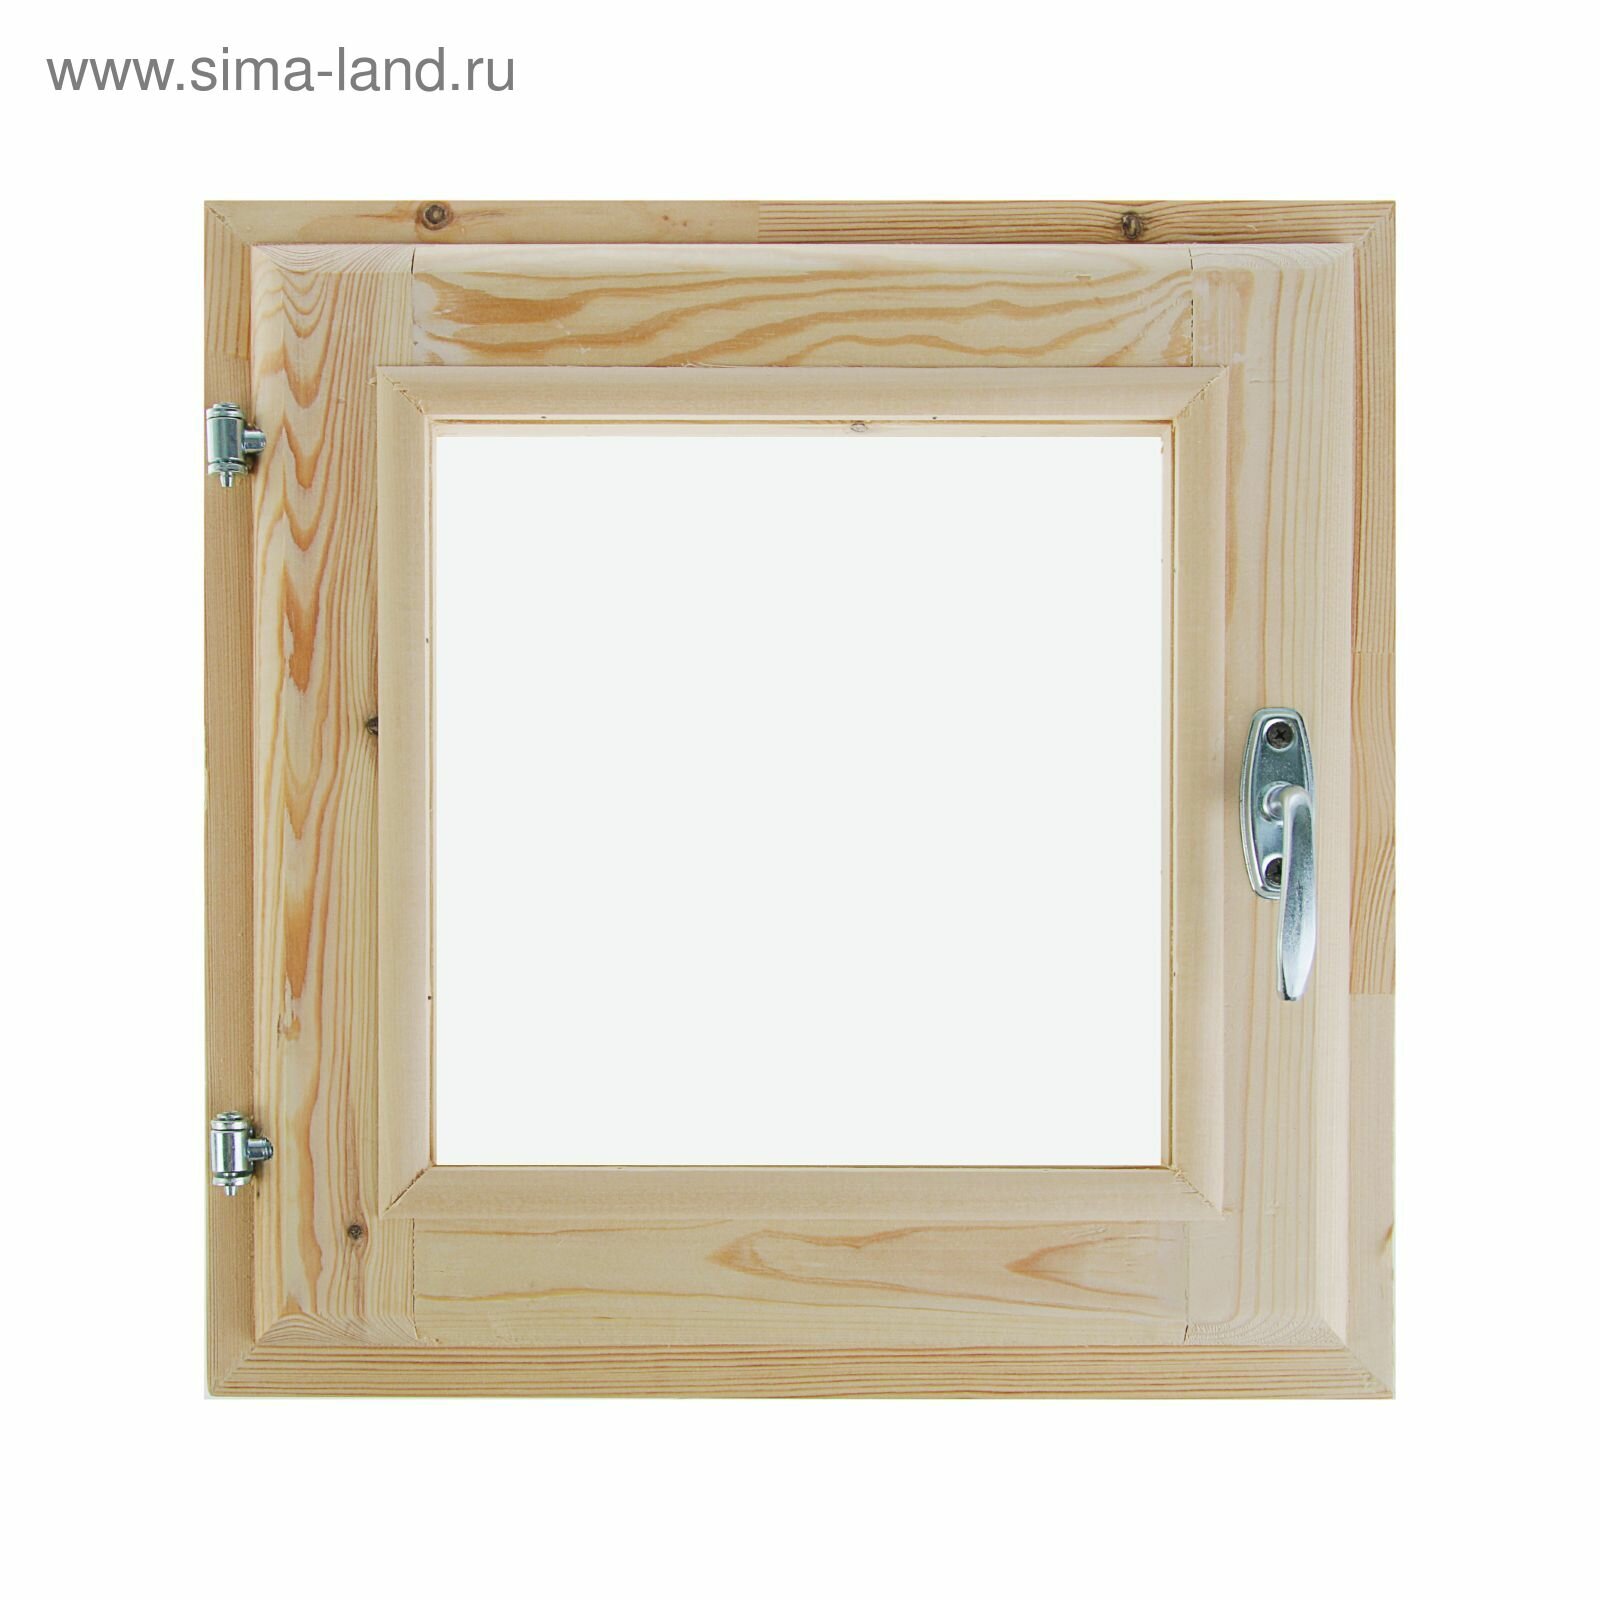 Окно, 40×40см, двойное стекло, из хвои